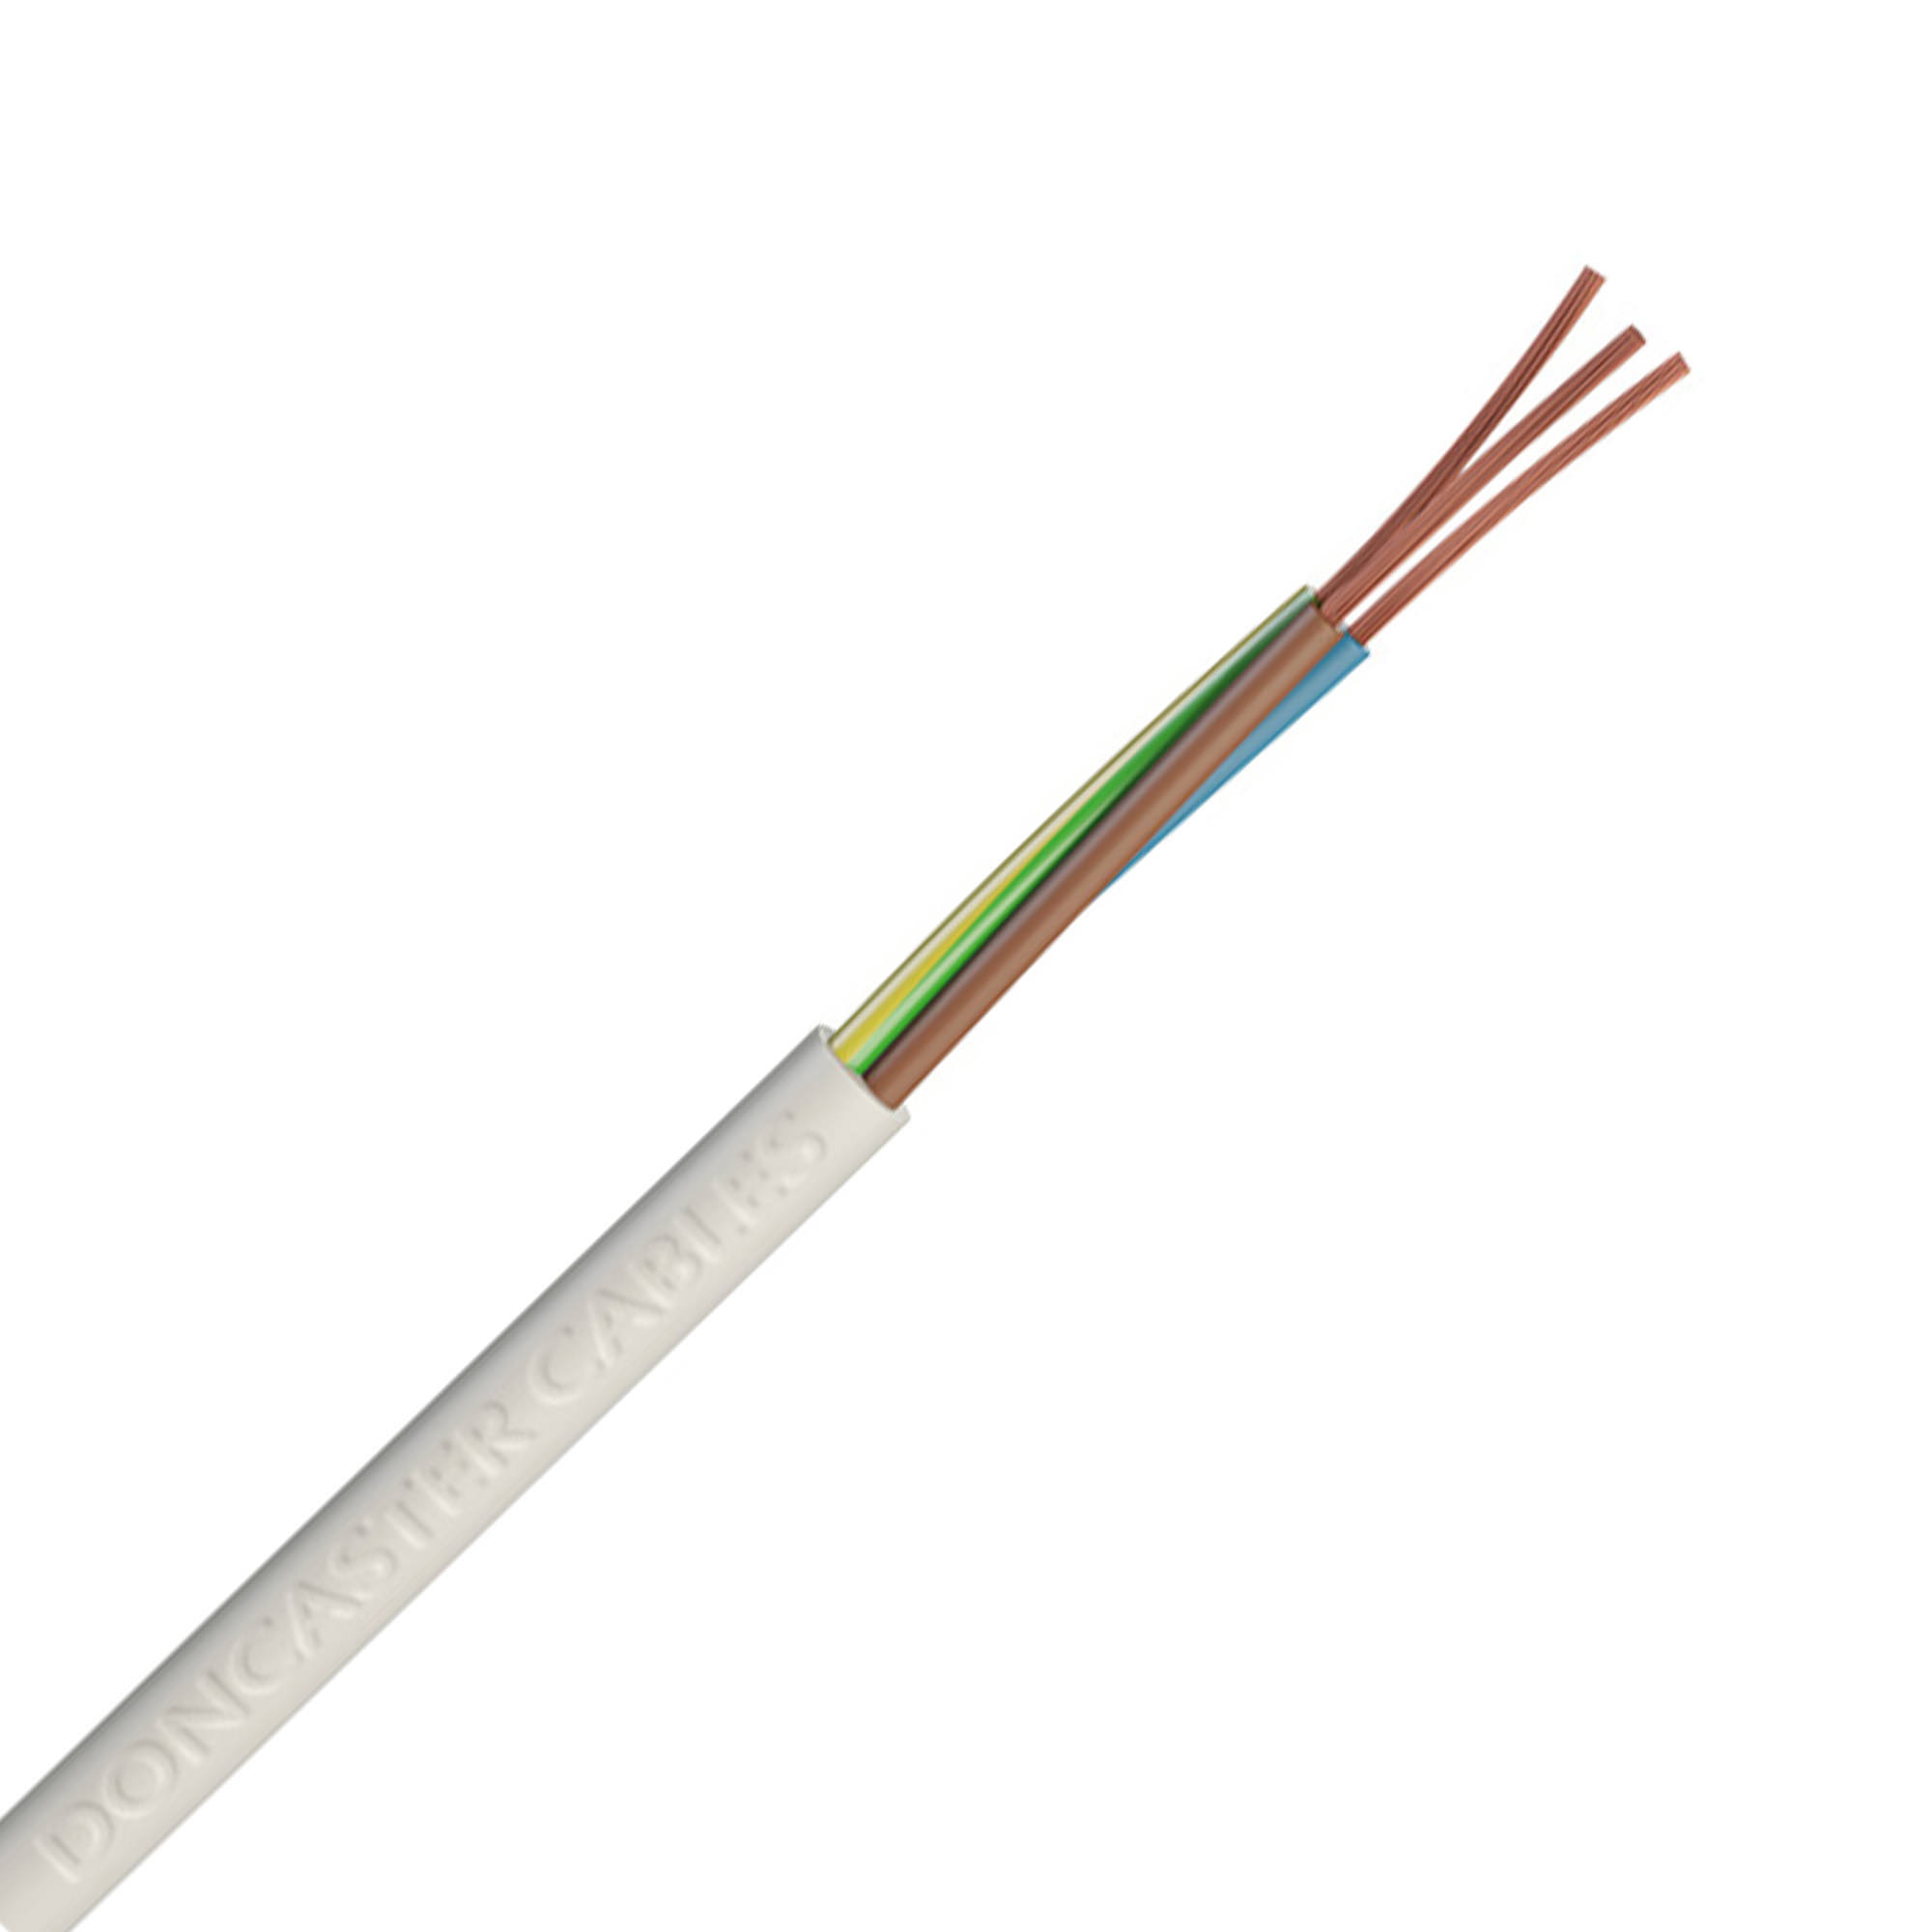 Doncaster Cables 3 Core Round Flex Cable (3183Y) 1.5mm2 Drum (50m)